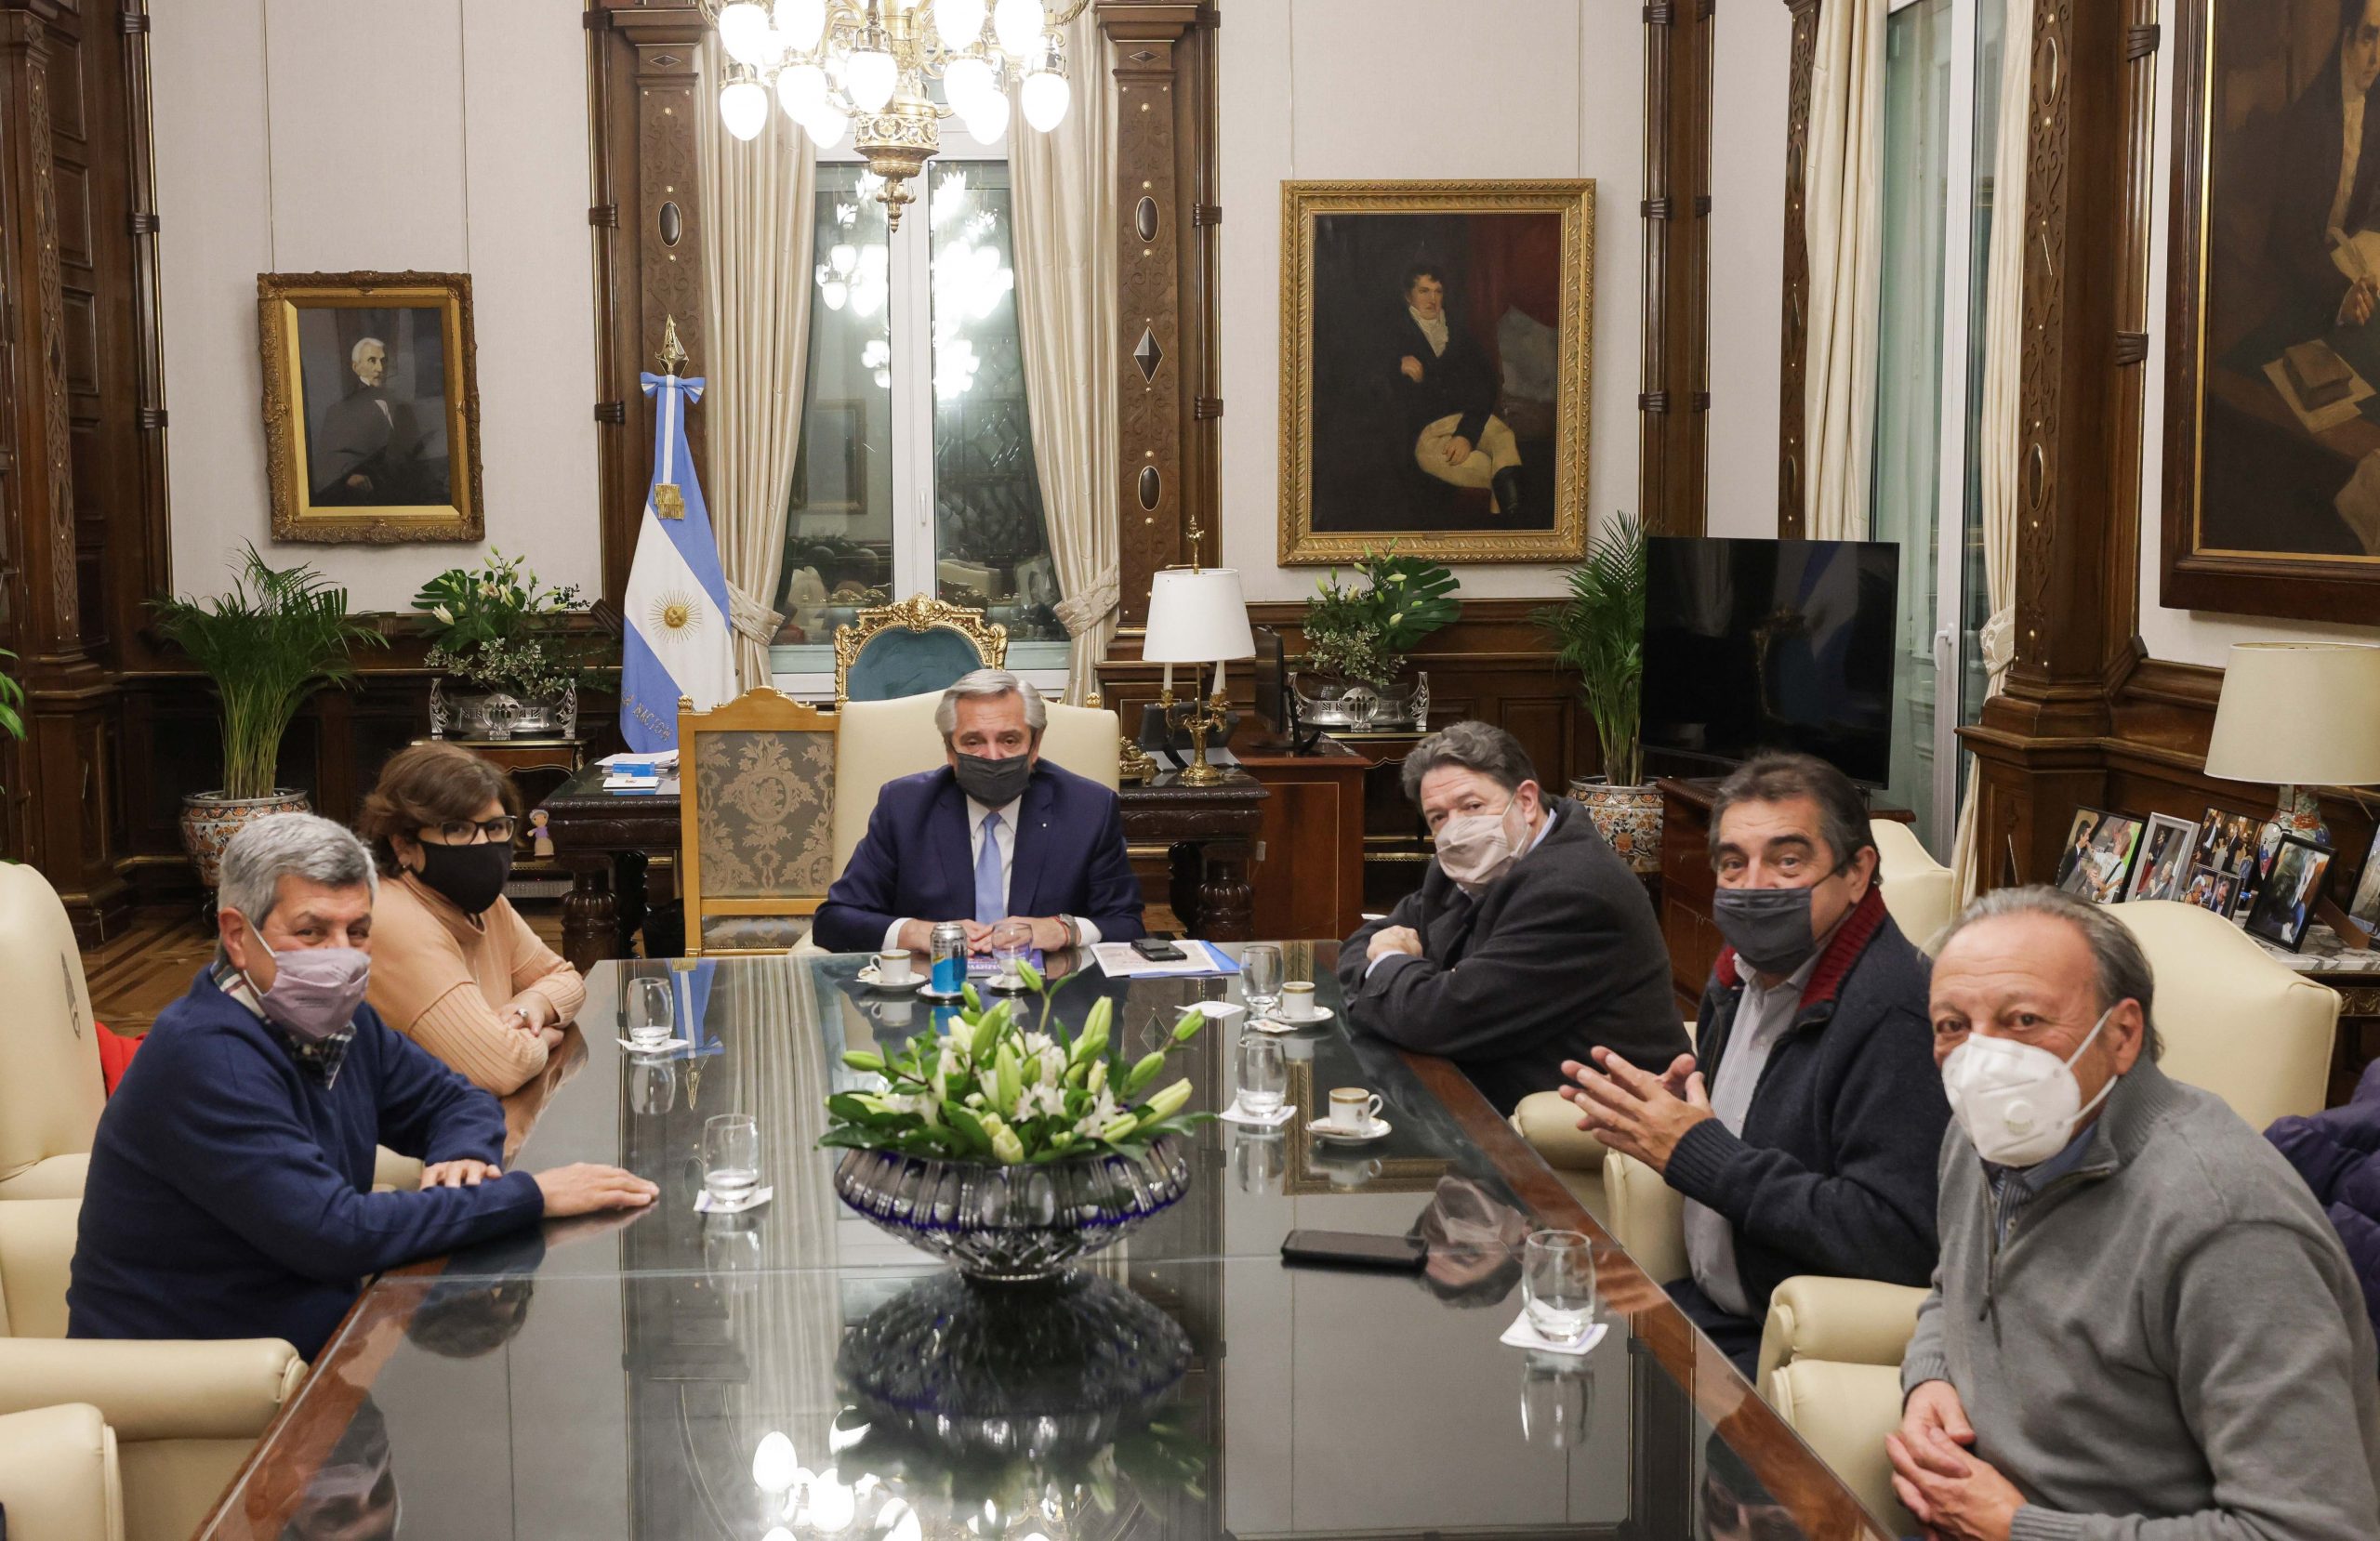 Unidad Popular con Alberto Fernández, Víctor De Gennaro, Leticia Quagliaro, Claudio Lozano, Hugo Amor, Hugo Cachorro Godoy